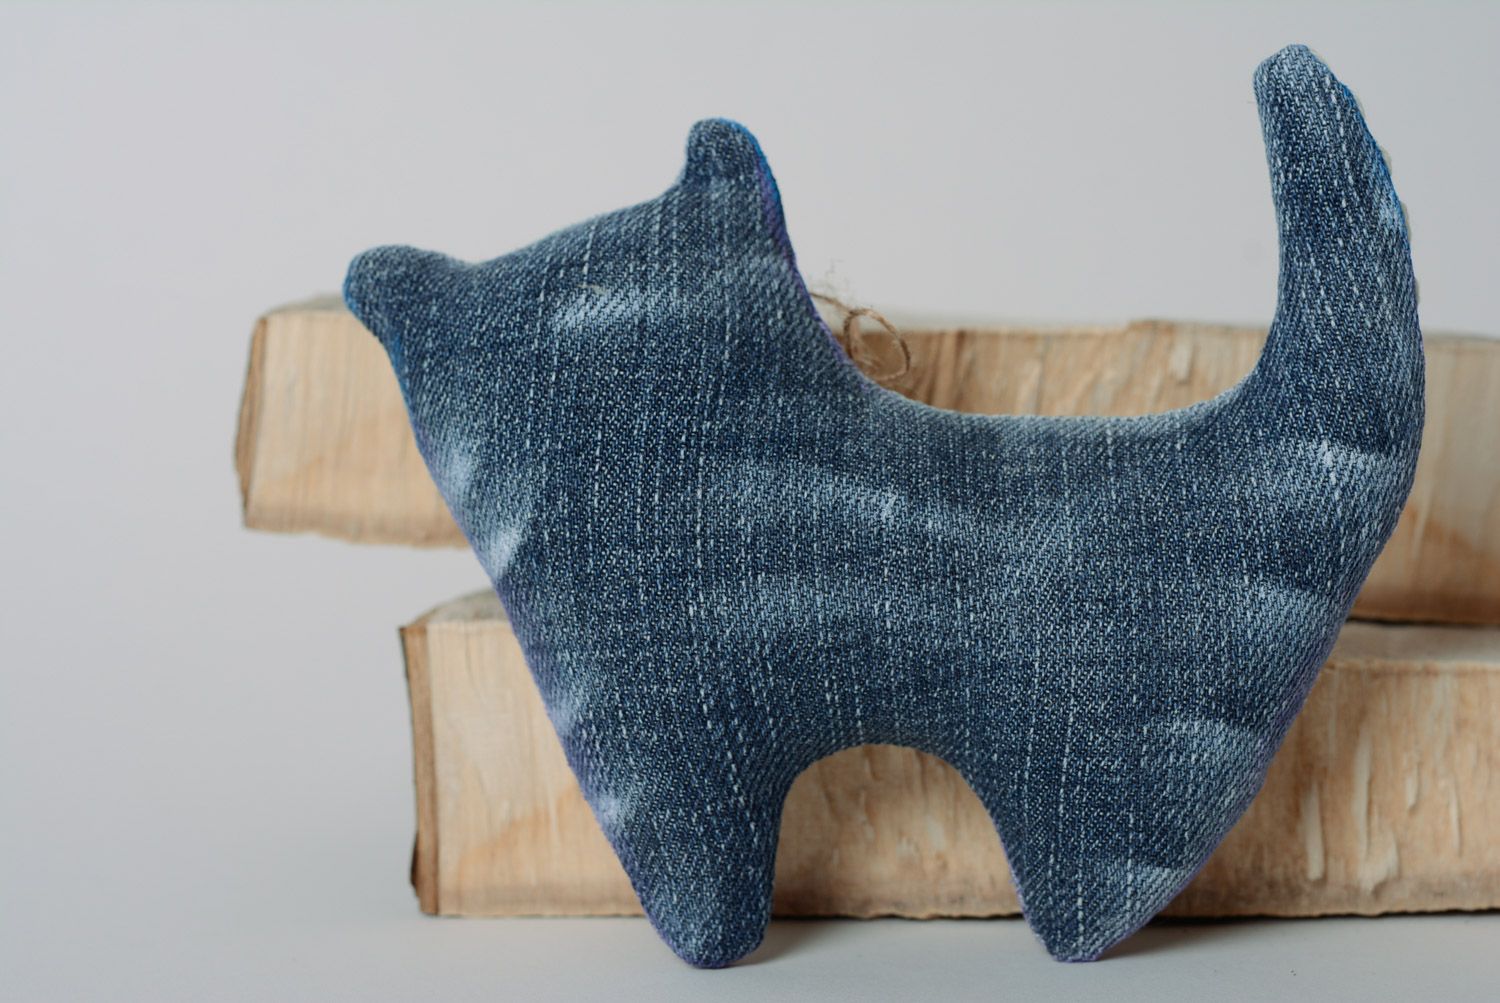 Синяя авторская игрушка из джинса для декора расписная в виде кота ручной работы  фото 4